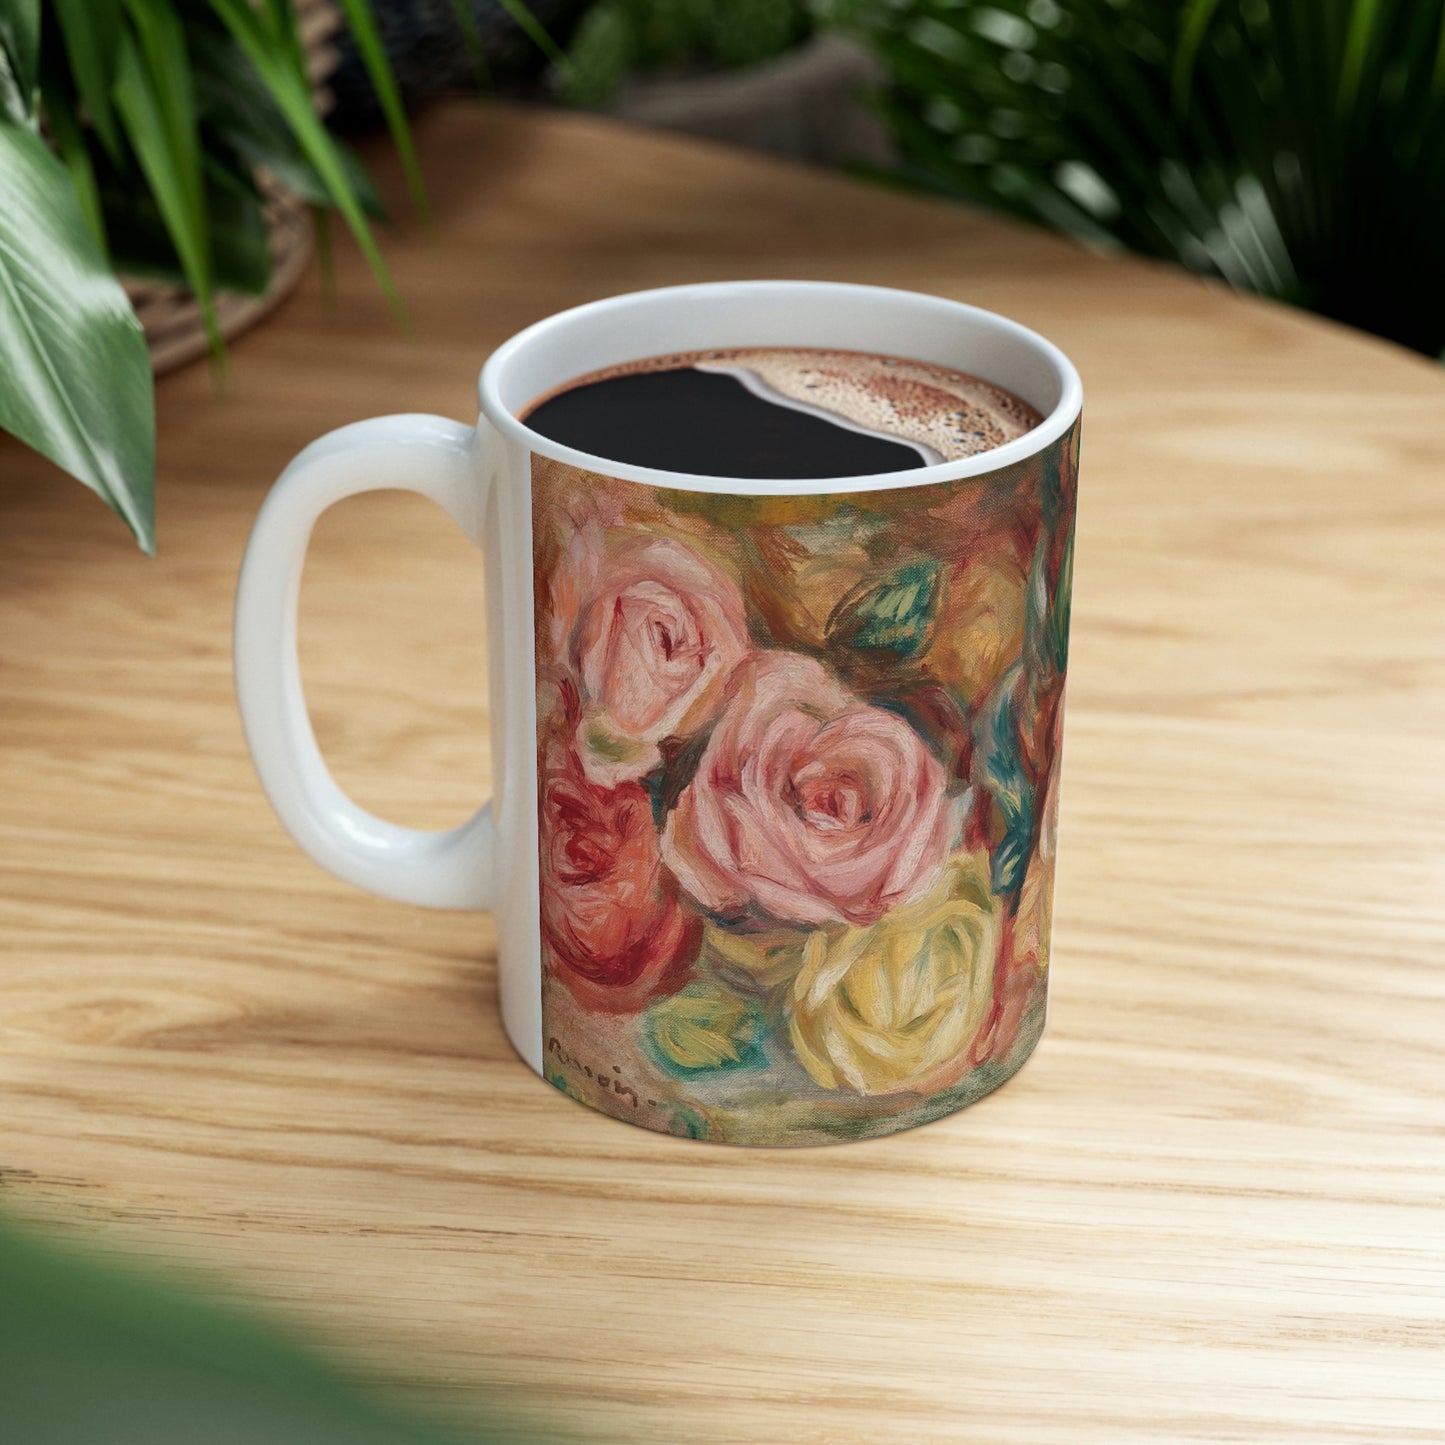 Vintage Flowers Ceramic Mug 11oz